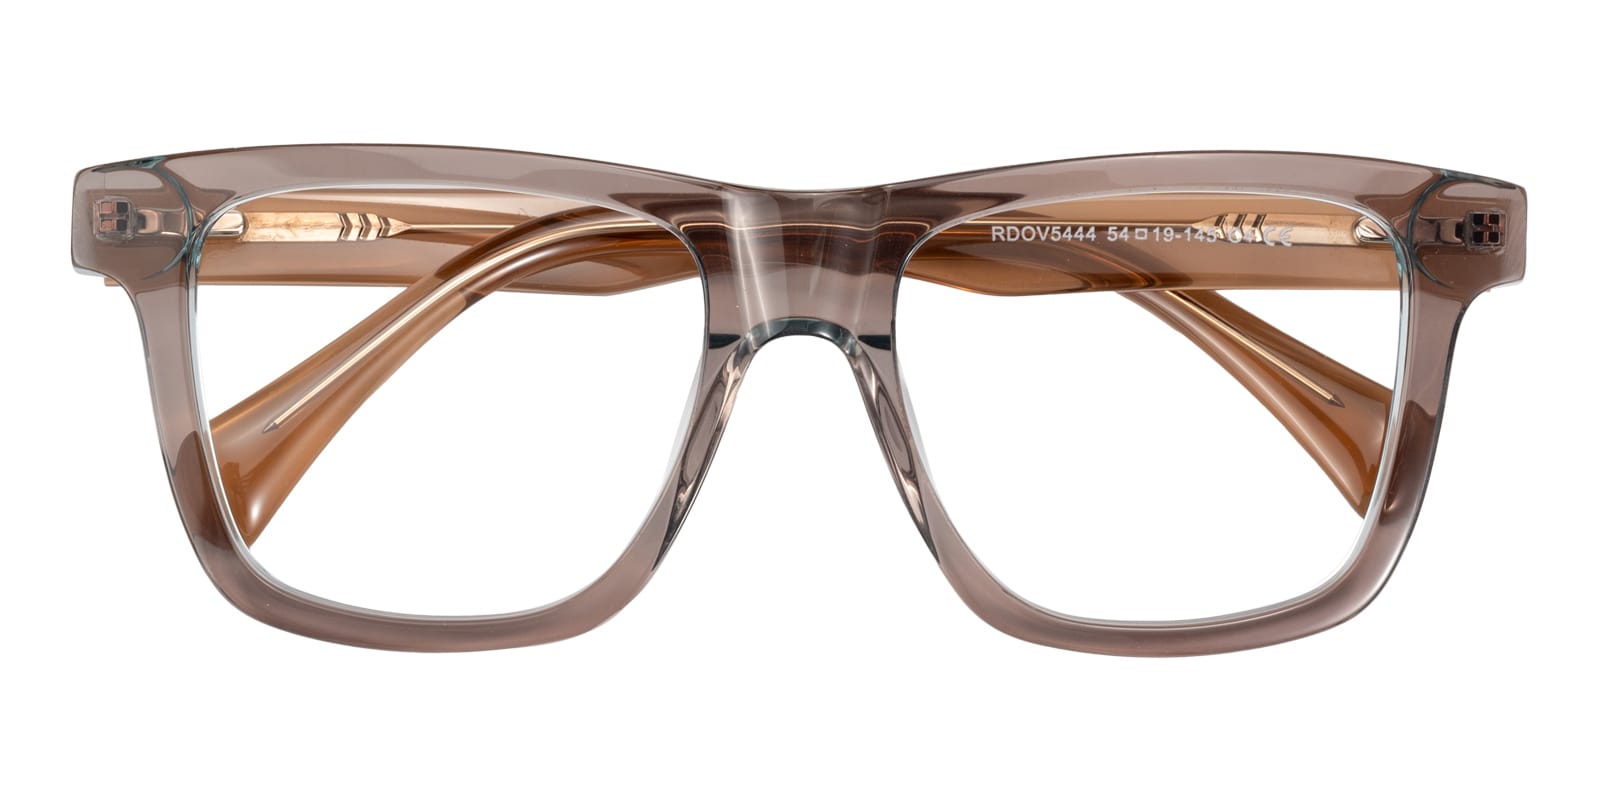 Square Eyeglasses, Full Frame Light Brown/Light Blue Plastic - FZ2129